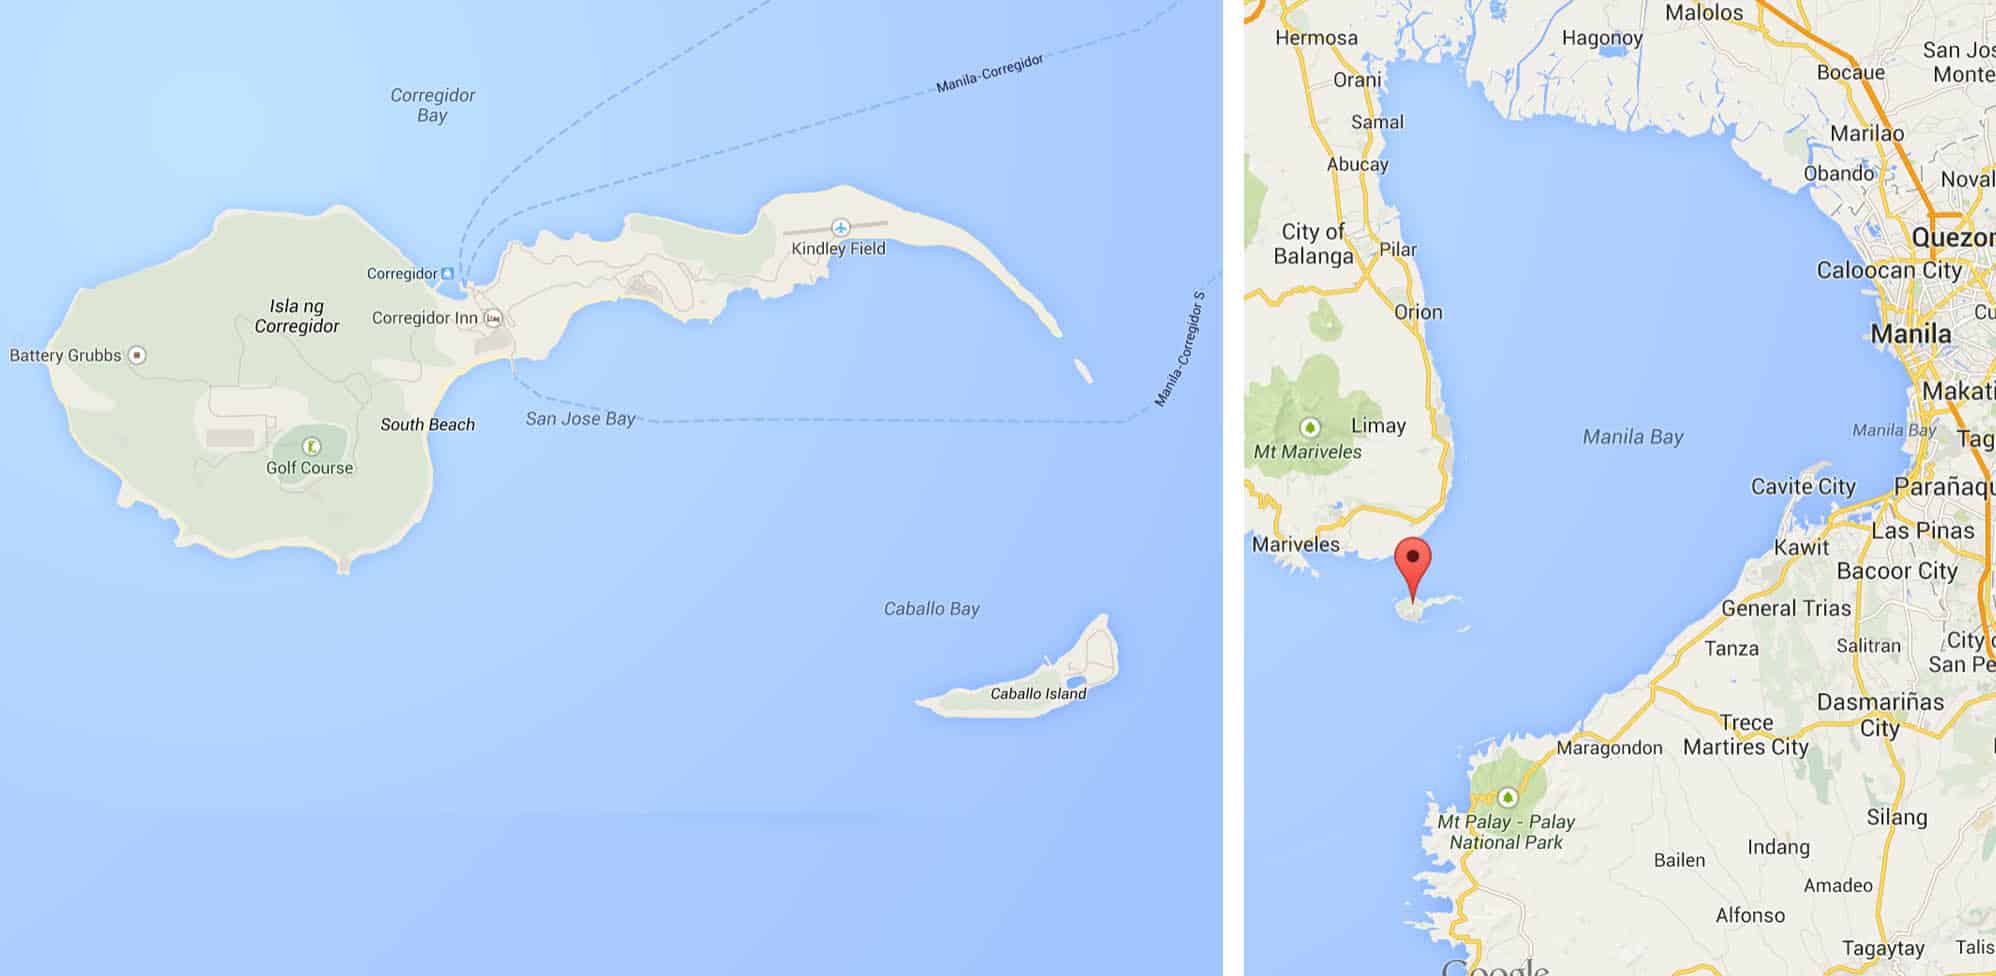 科雷吉多岛及其在马尼拉湾的位置。好吧，我会说的。它看起来像一个精子细胞。